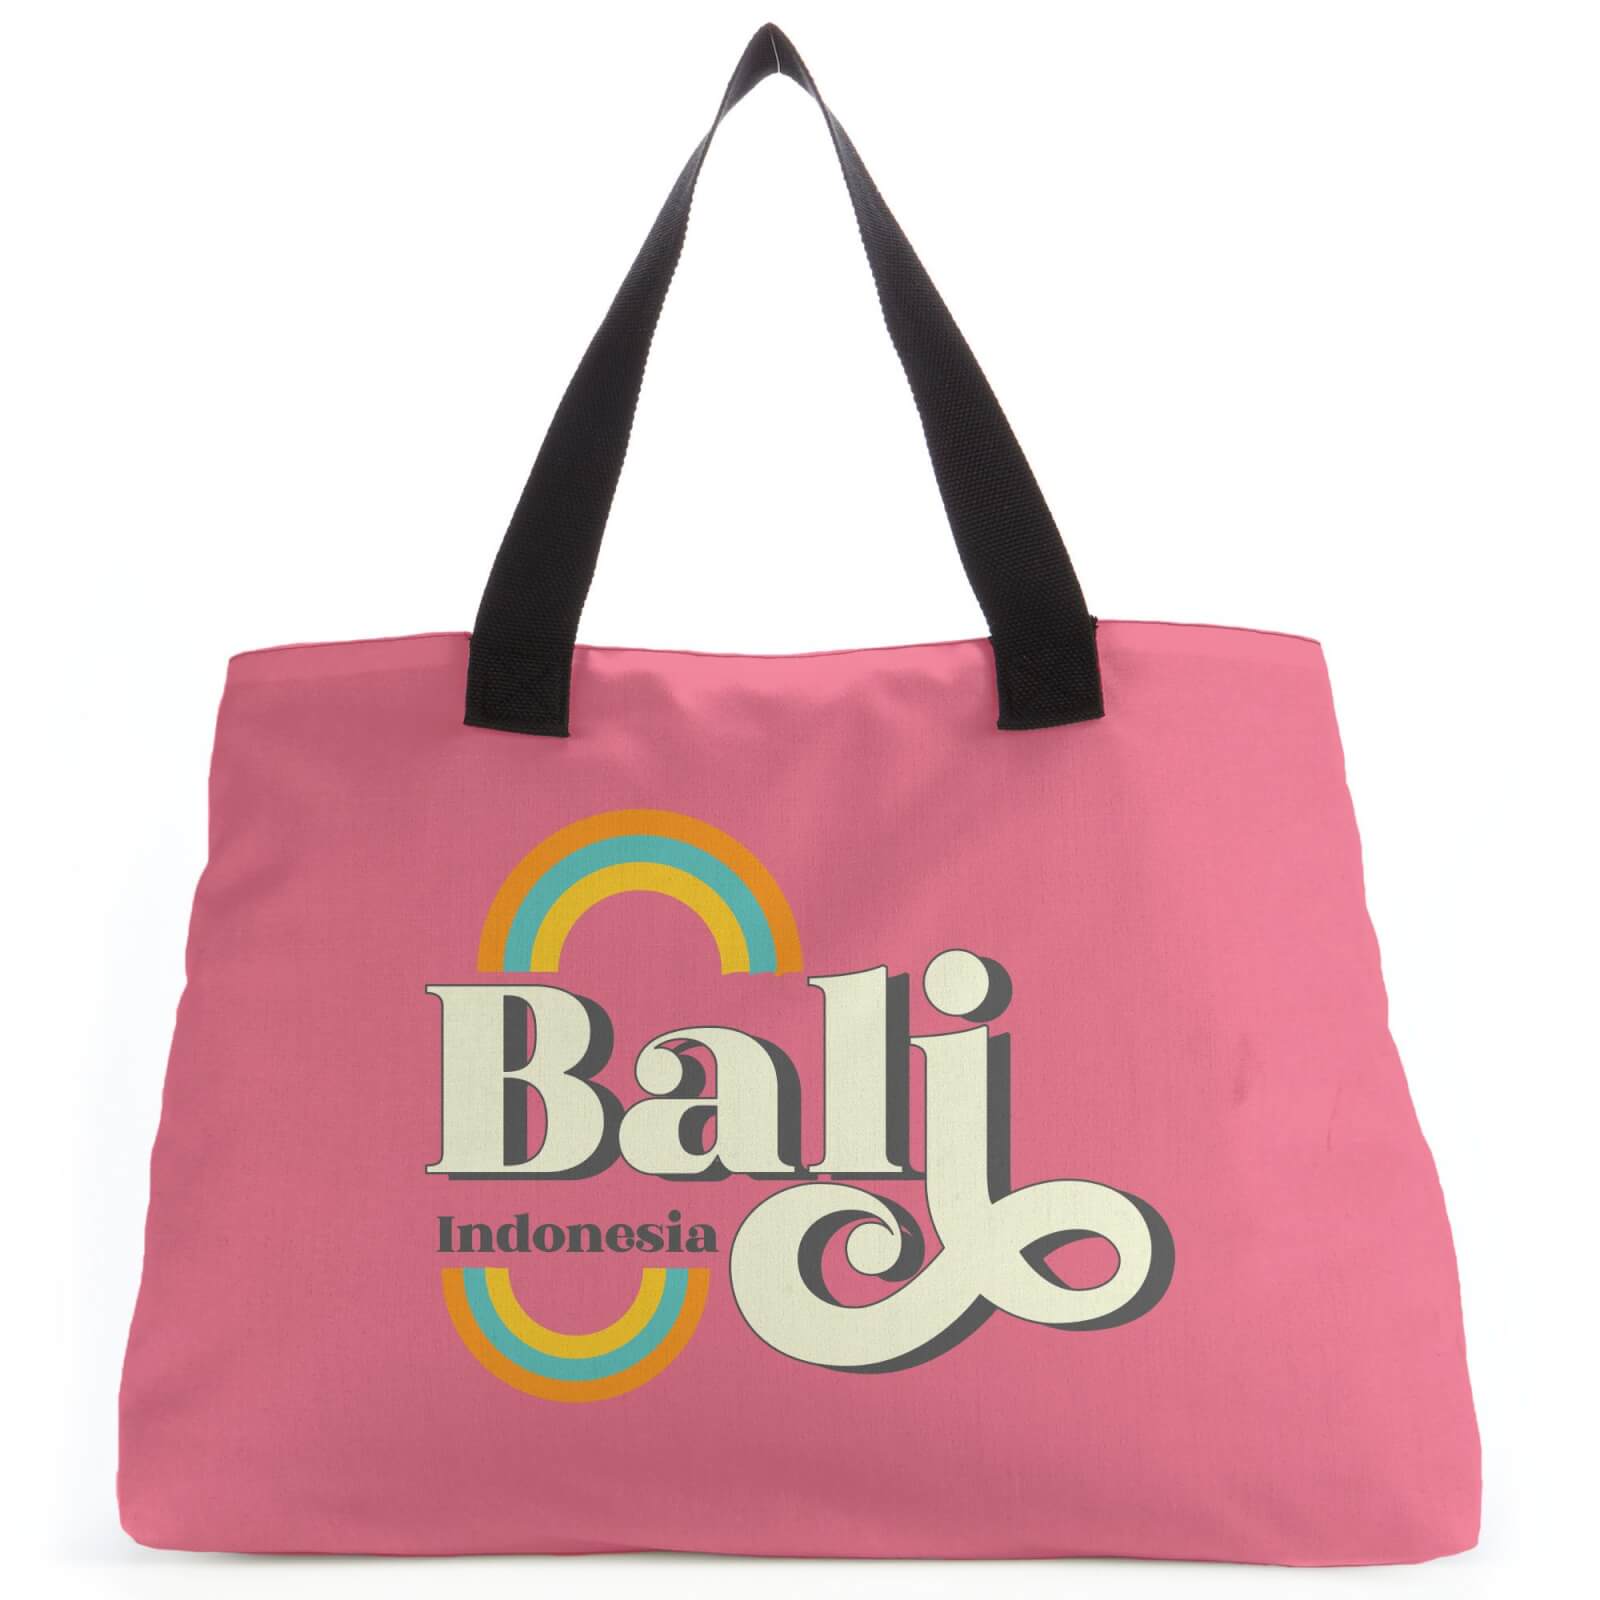 Bali Tote Bag